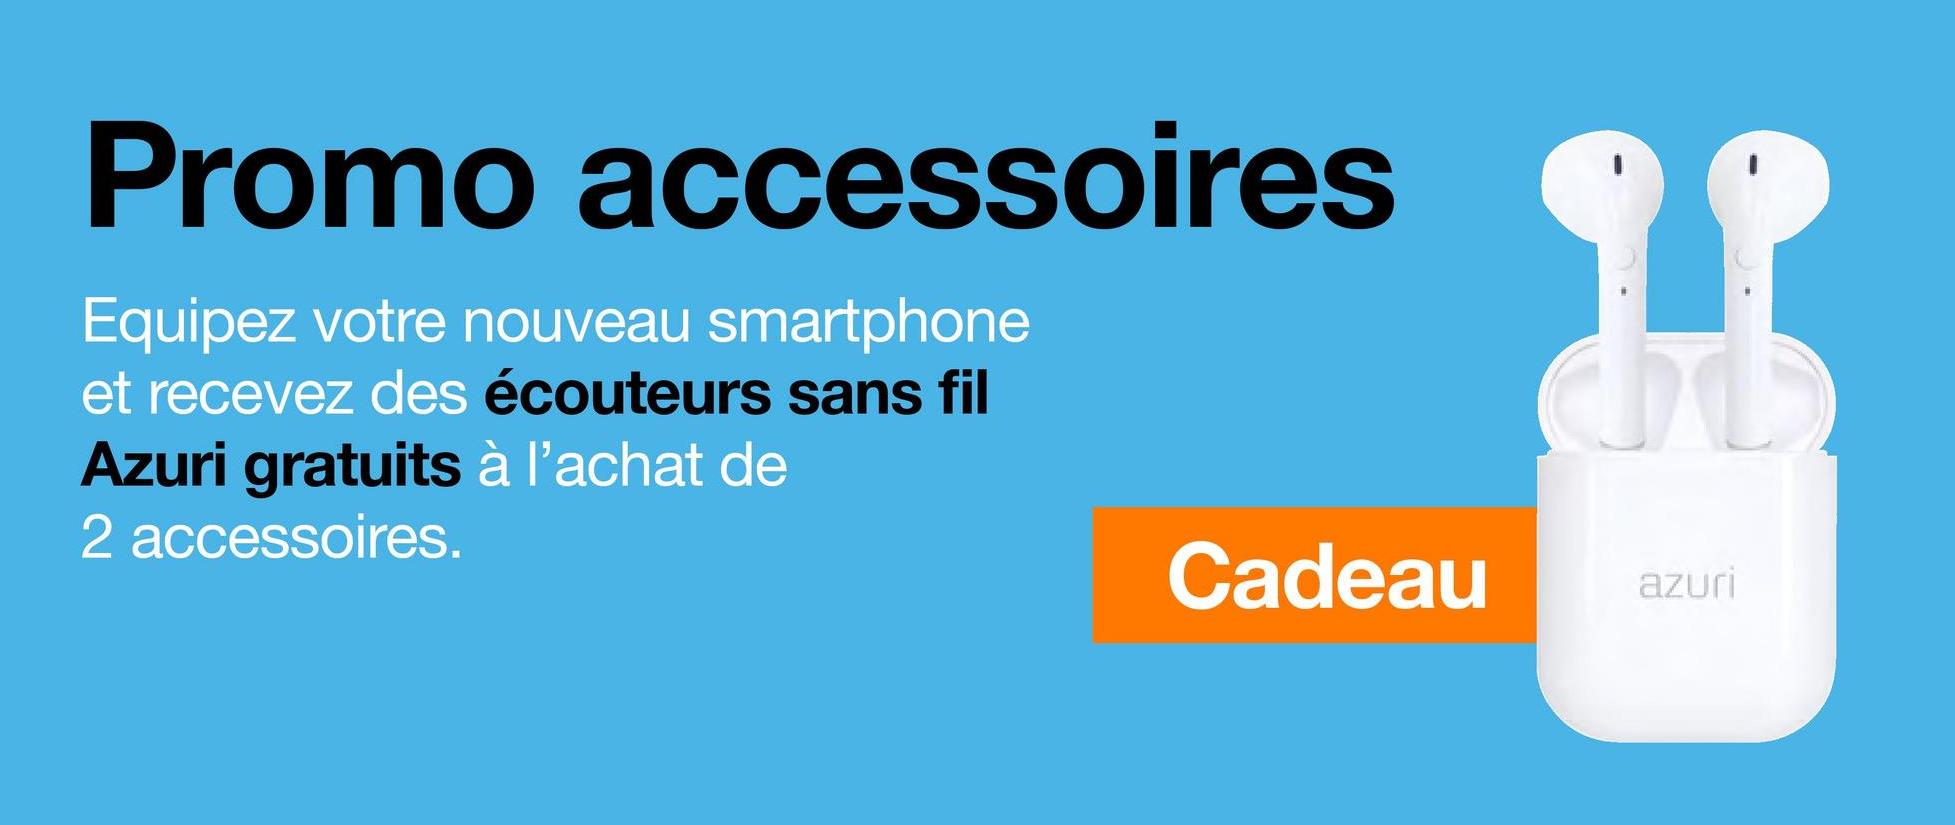 Promo accessoires
Equipez votre nouveau smartphone
et recevez des écouteurs sans fil
Azuri gratuits à l'achat de
2 accessoires.
Cadeau
98
azuri